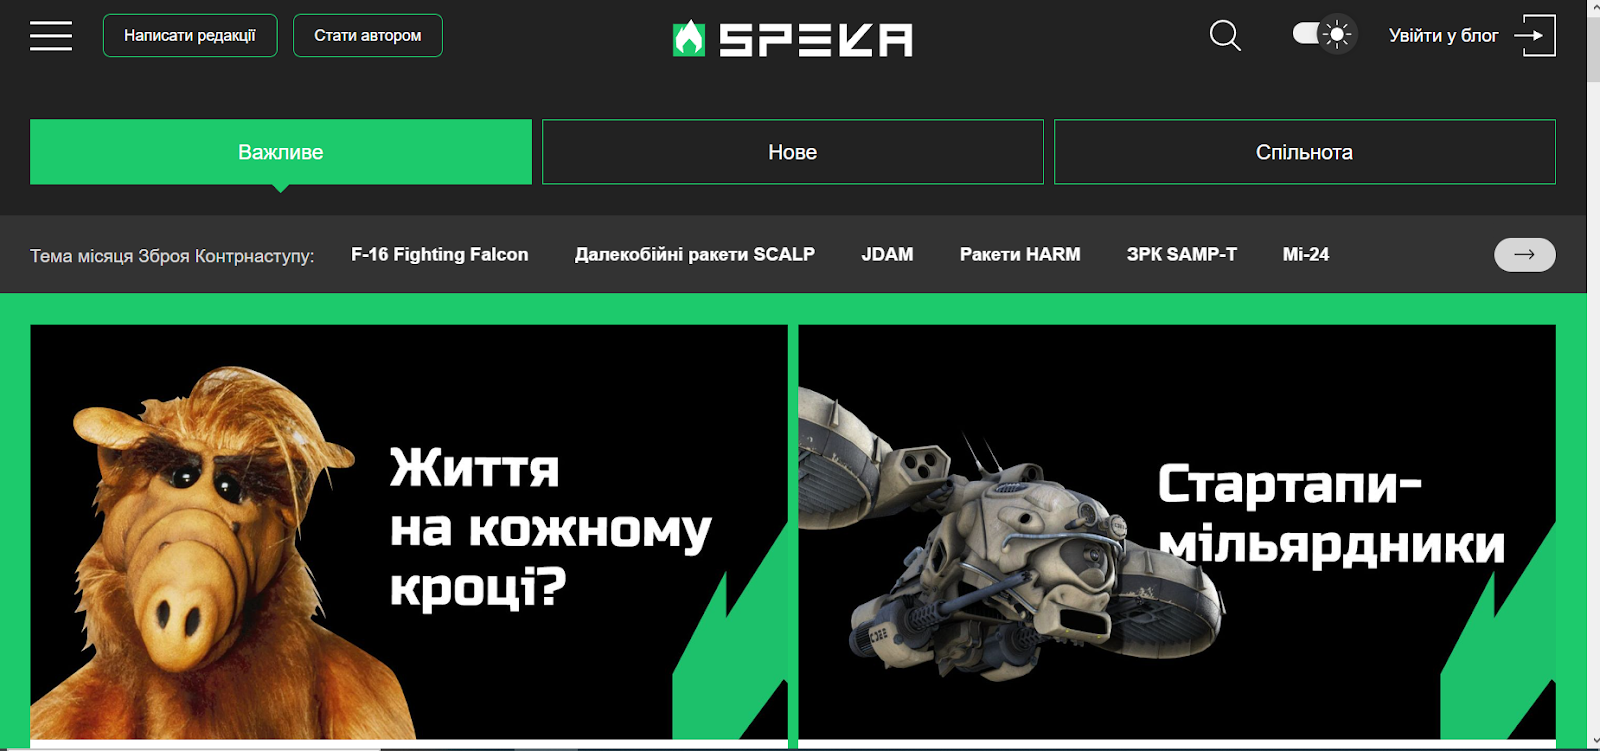 Speka.media – україномовне видання про актуальні новини